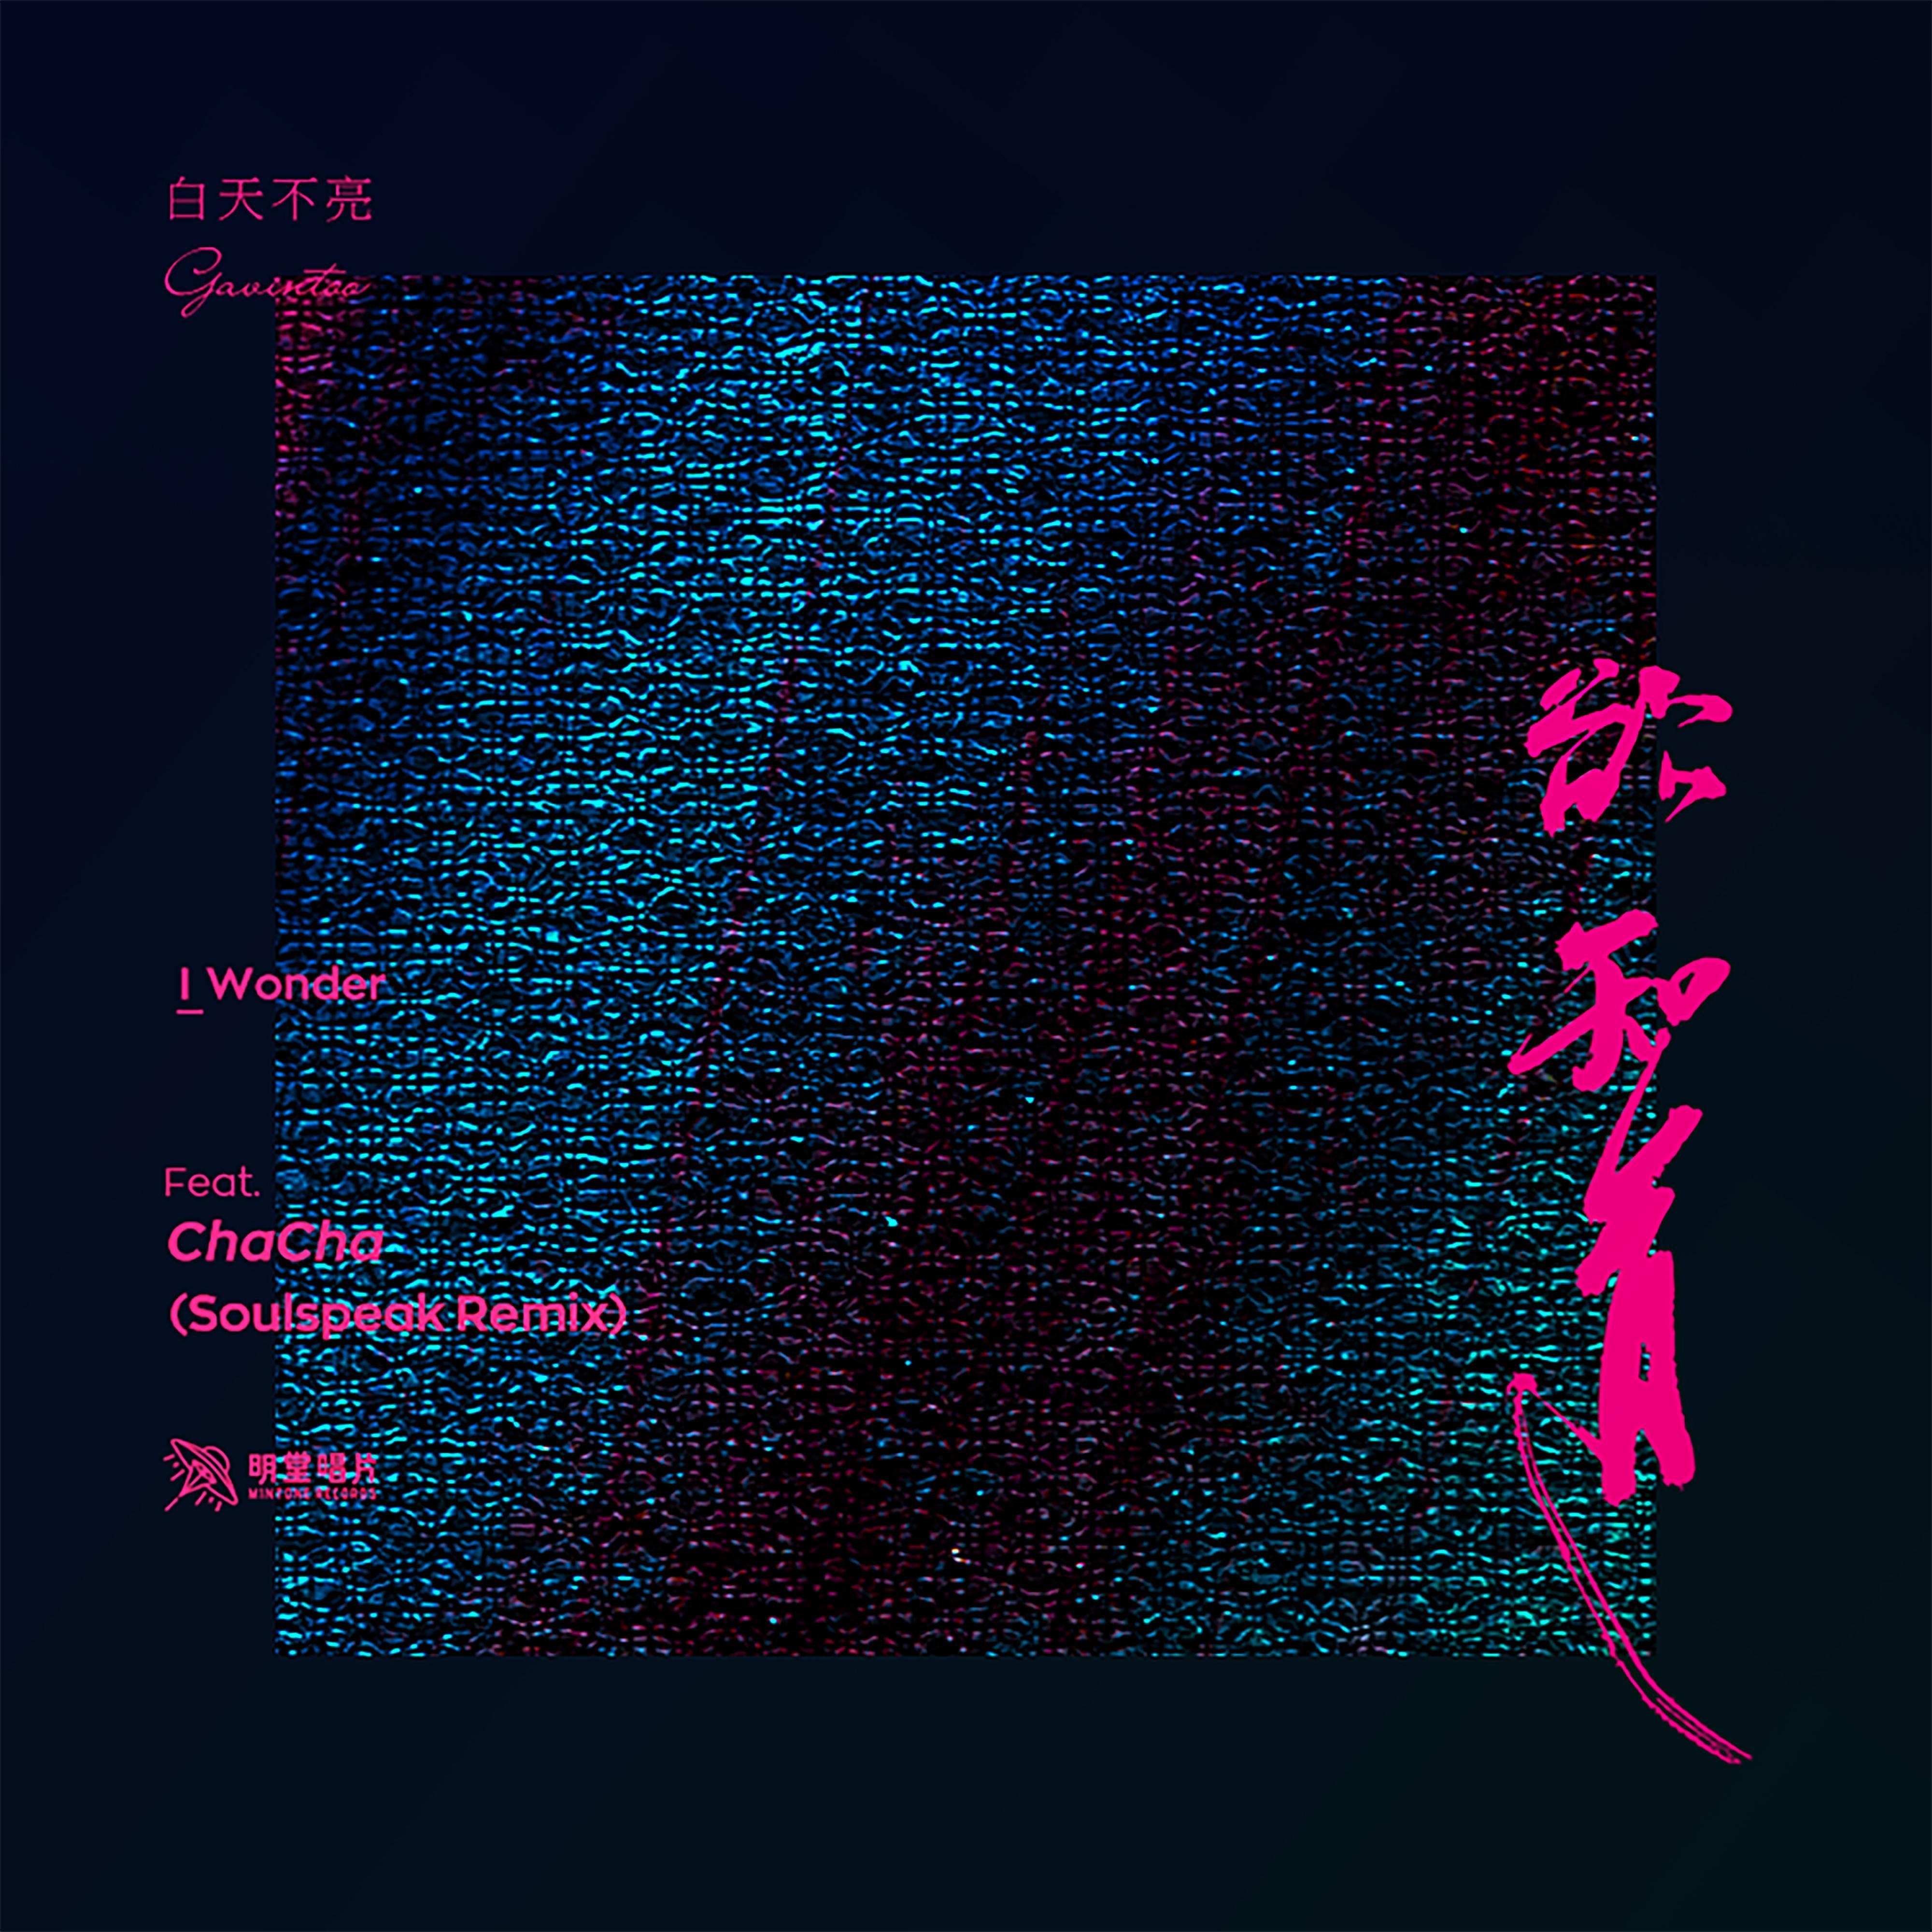 yu zhi dao feat. ChaCha Soulspeak Remix